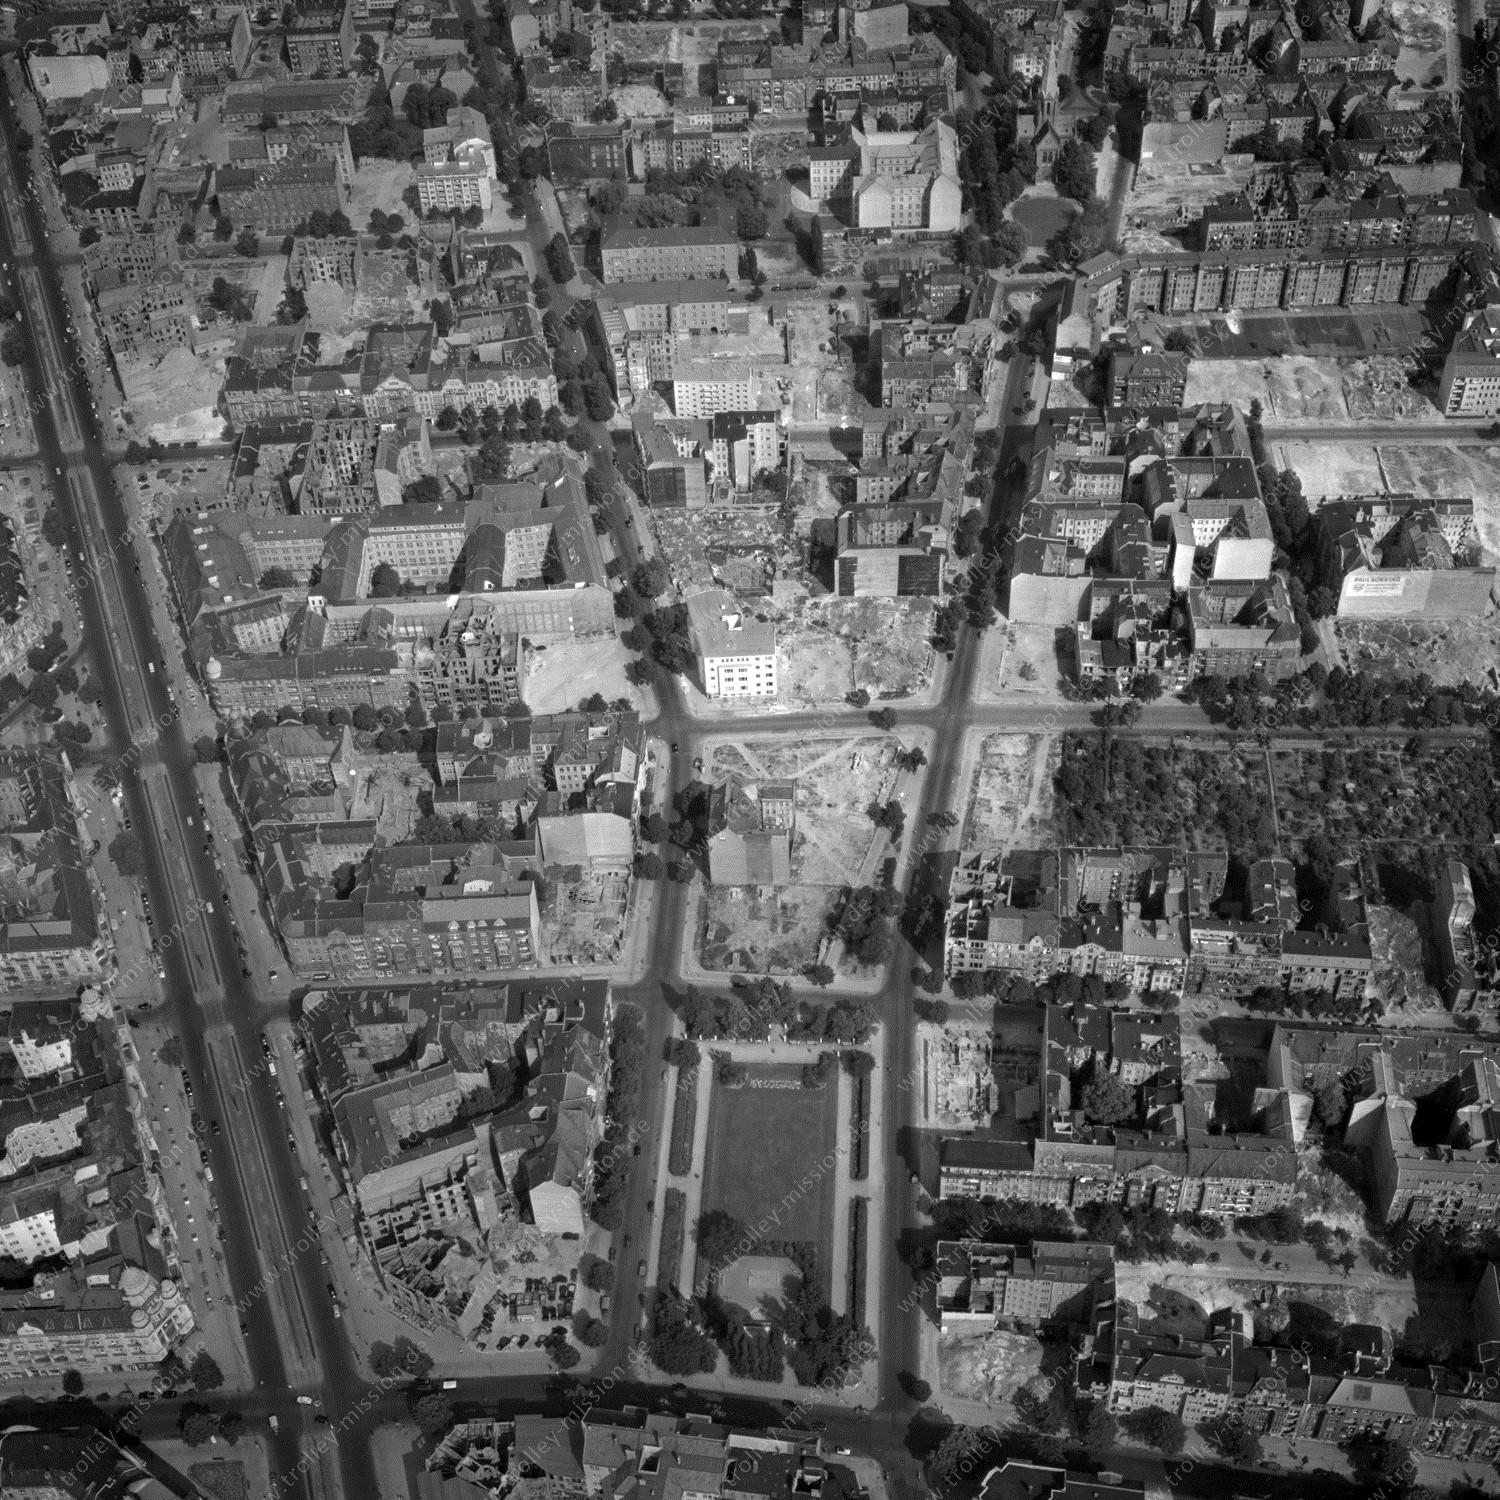 Alte Fotos und Luftbilder von Berlin - Luftbildaufnahme Nr. 01 - Historische Luftaufnahmen von West-Berlin aus dem Jahr 1954 - Flugstrecke Tango